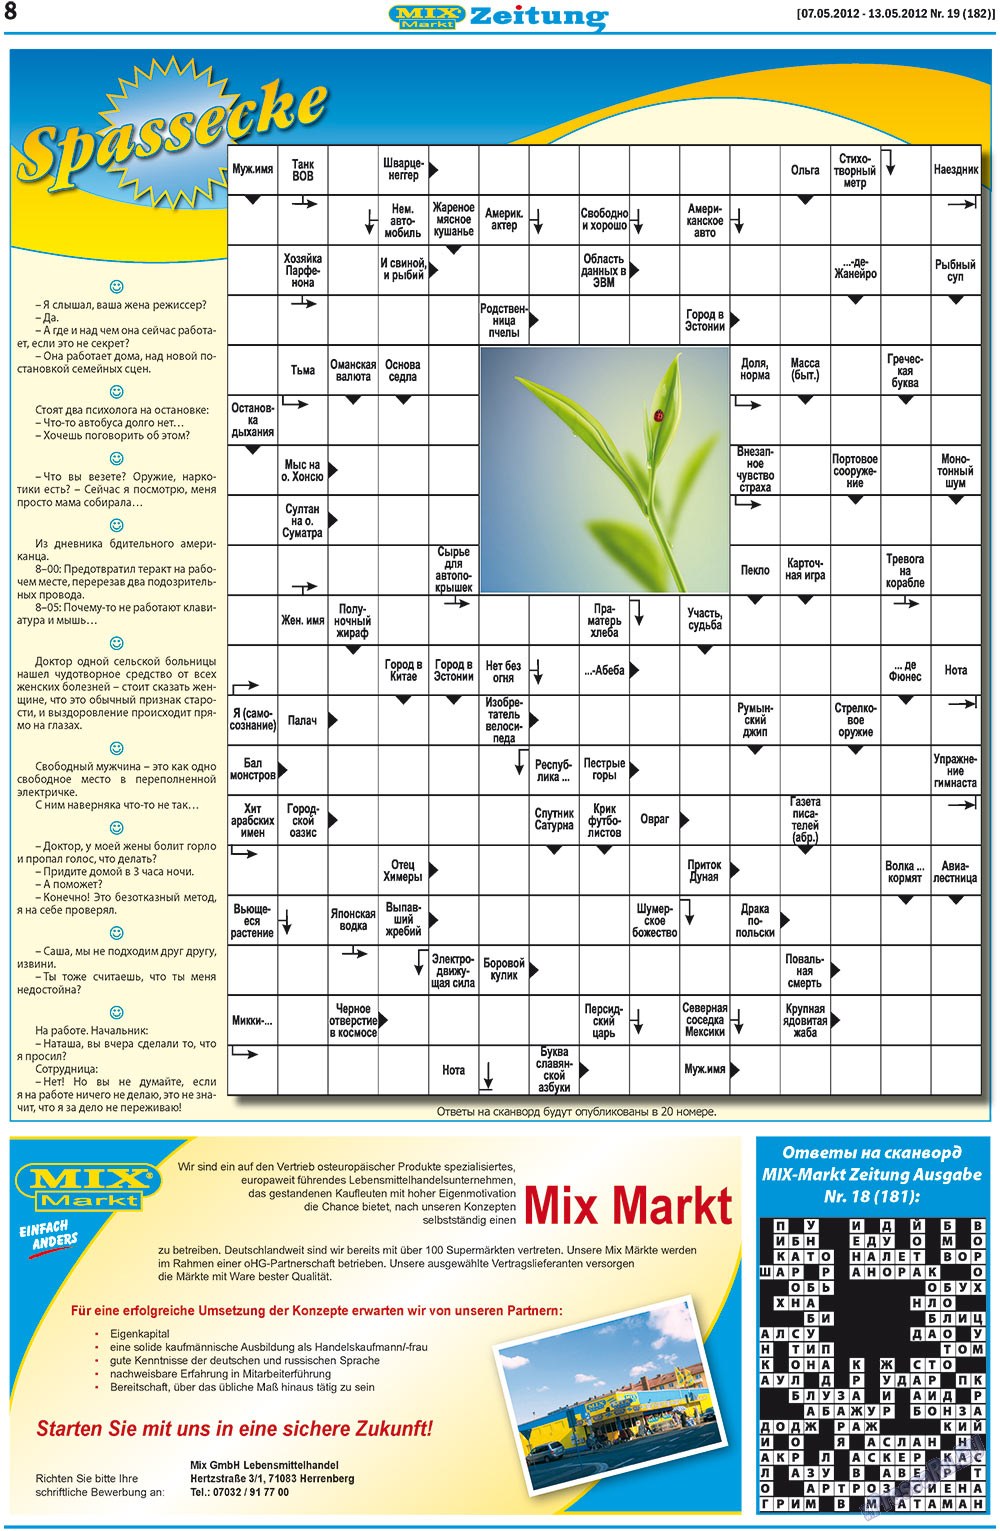 MIX-Markt Zeitung (газета). 2012 год, номер 19, стр. 8